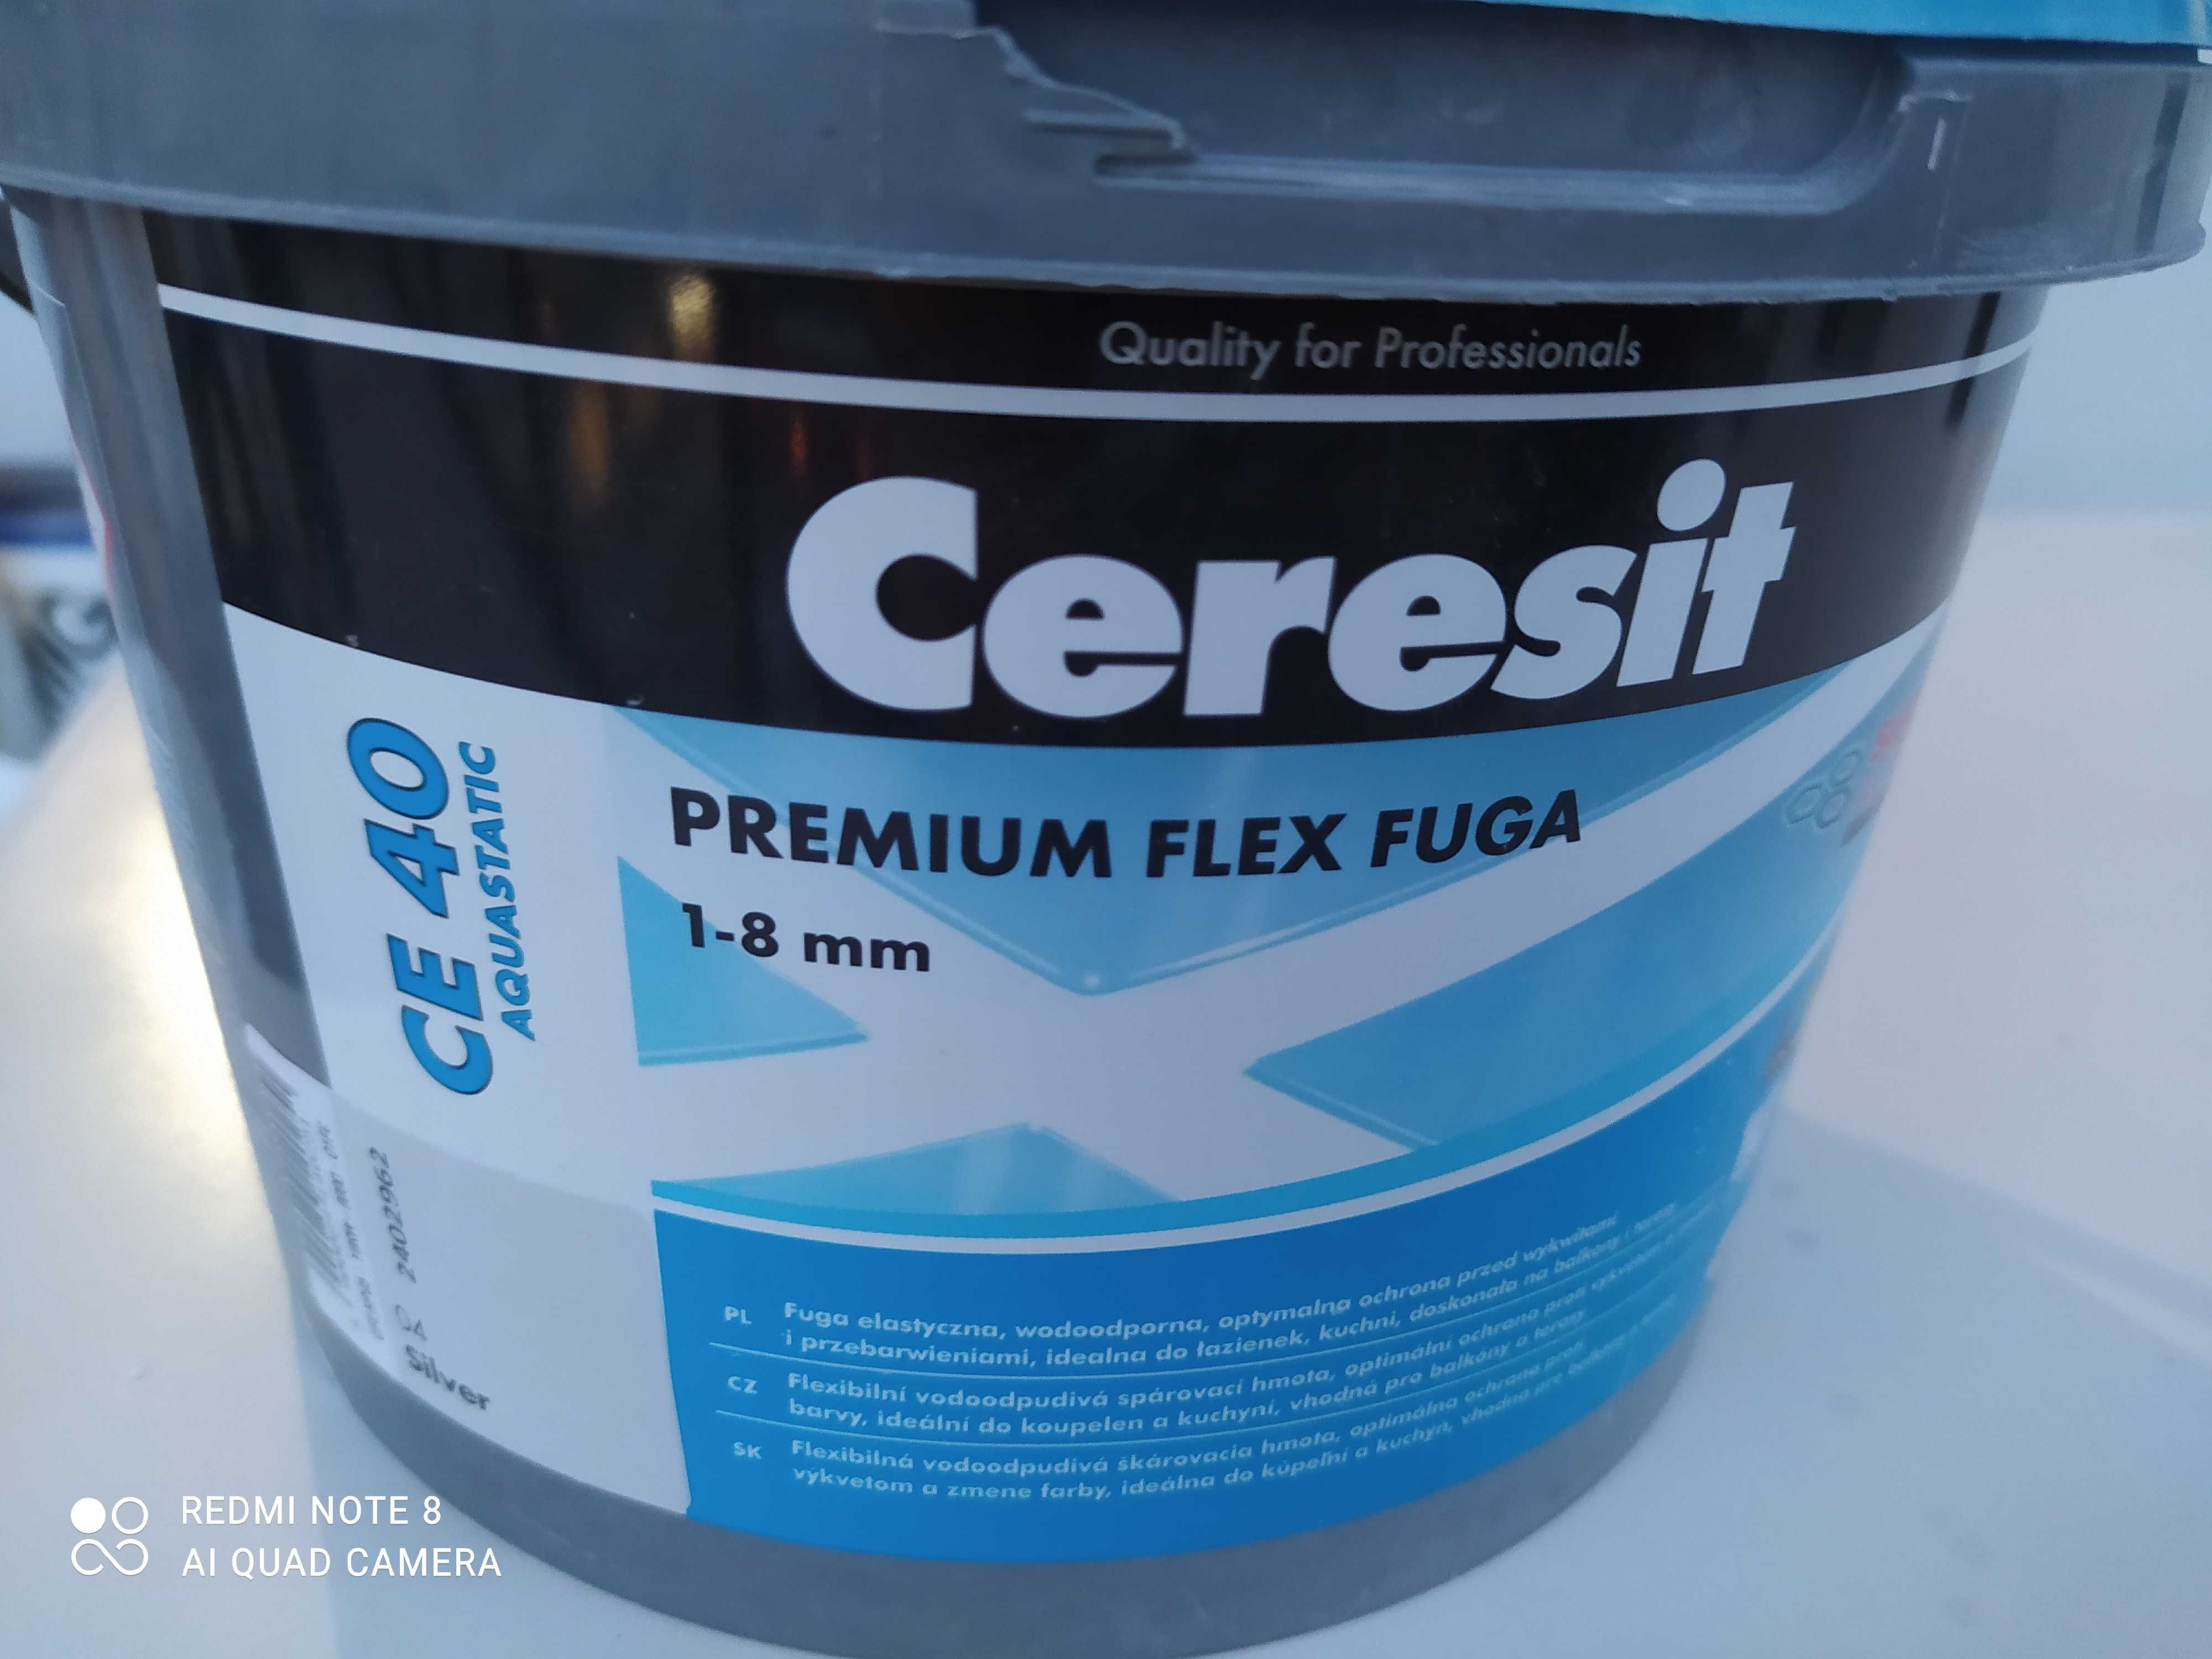 Ceresit CE 40 Fuga Flex Premium Silver 04